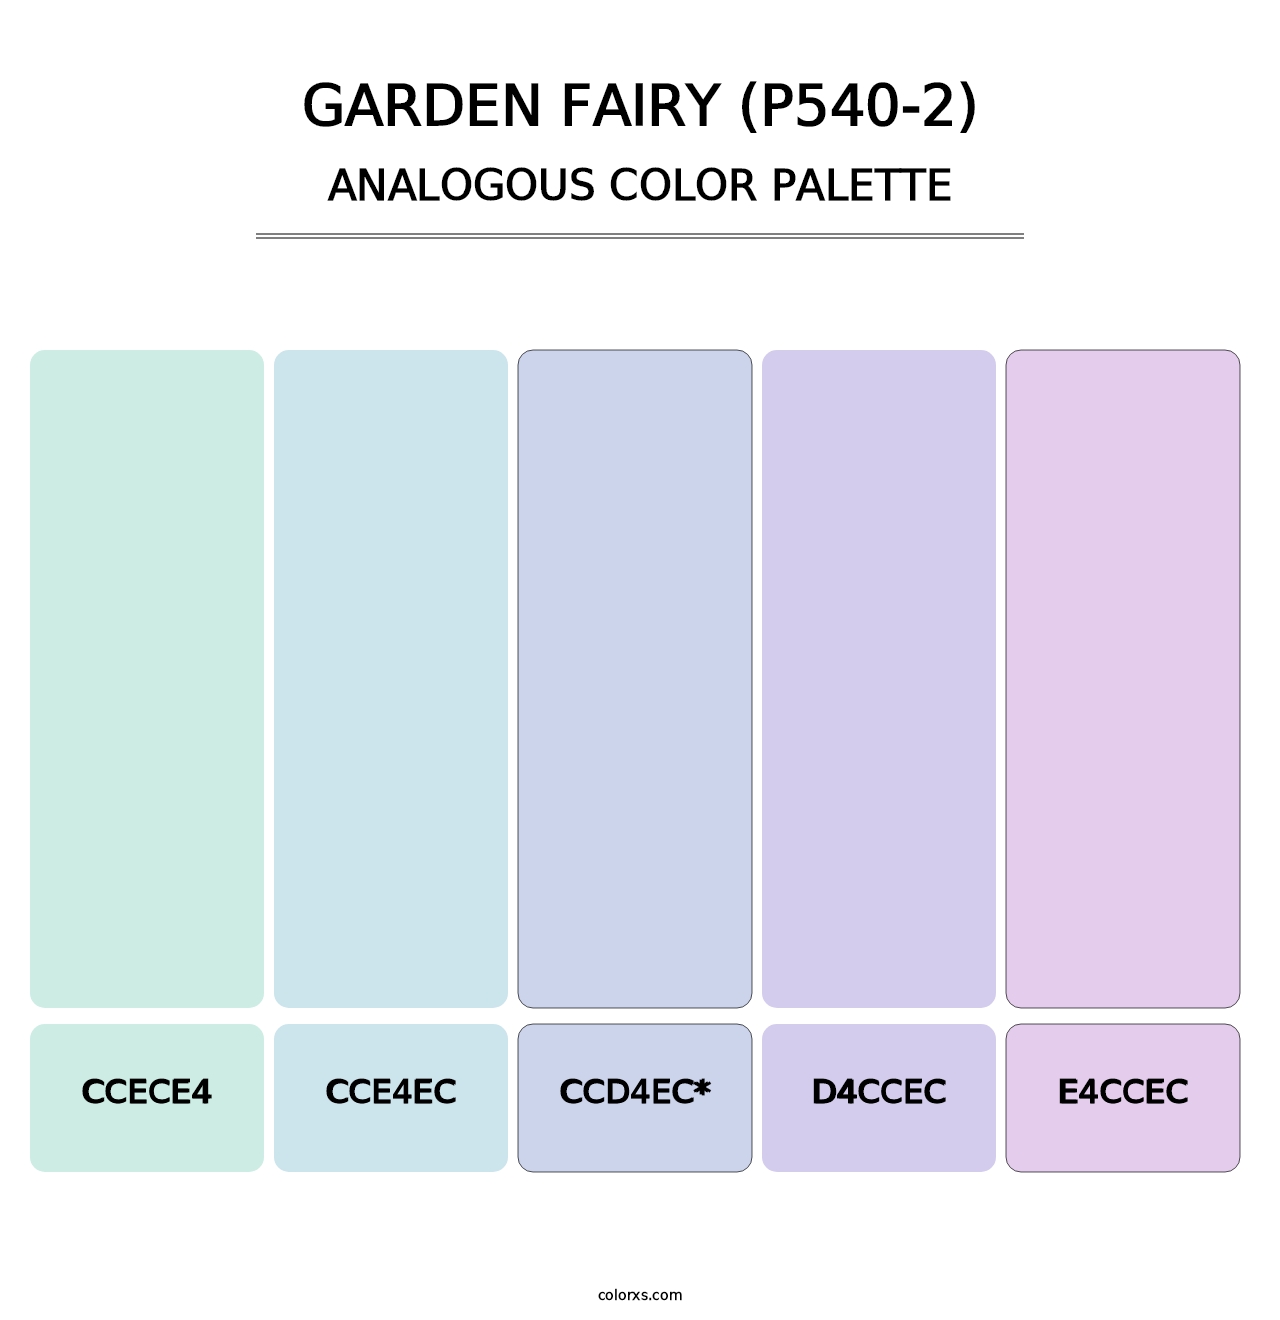 Garden Fairy (P540-2) - Analogous Color Palette